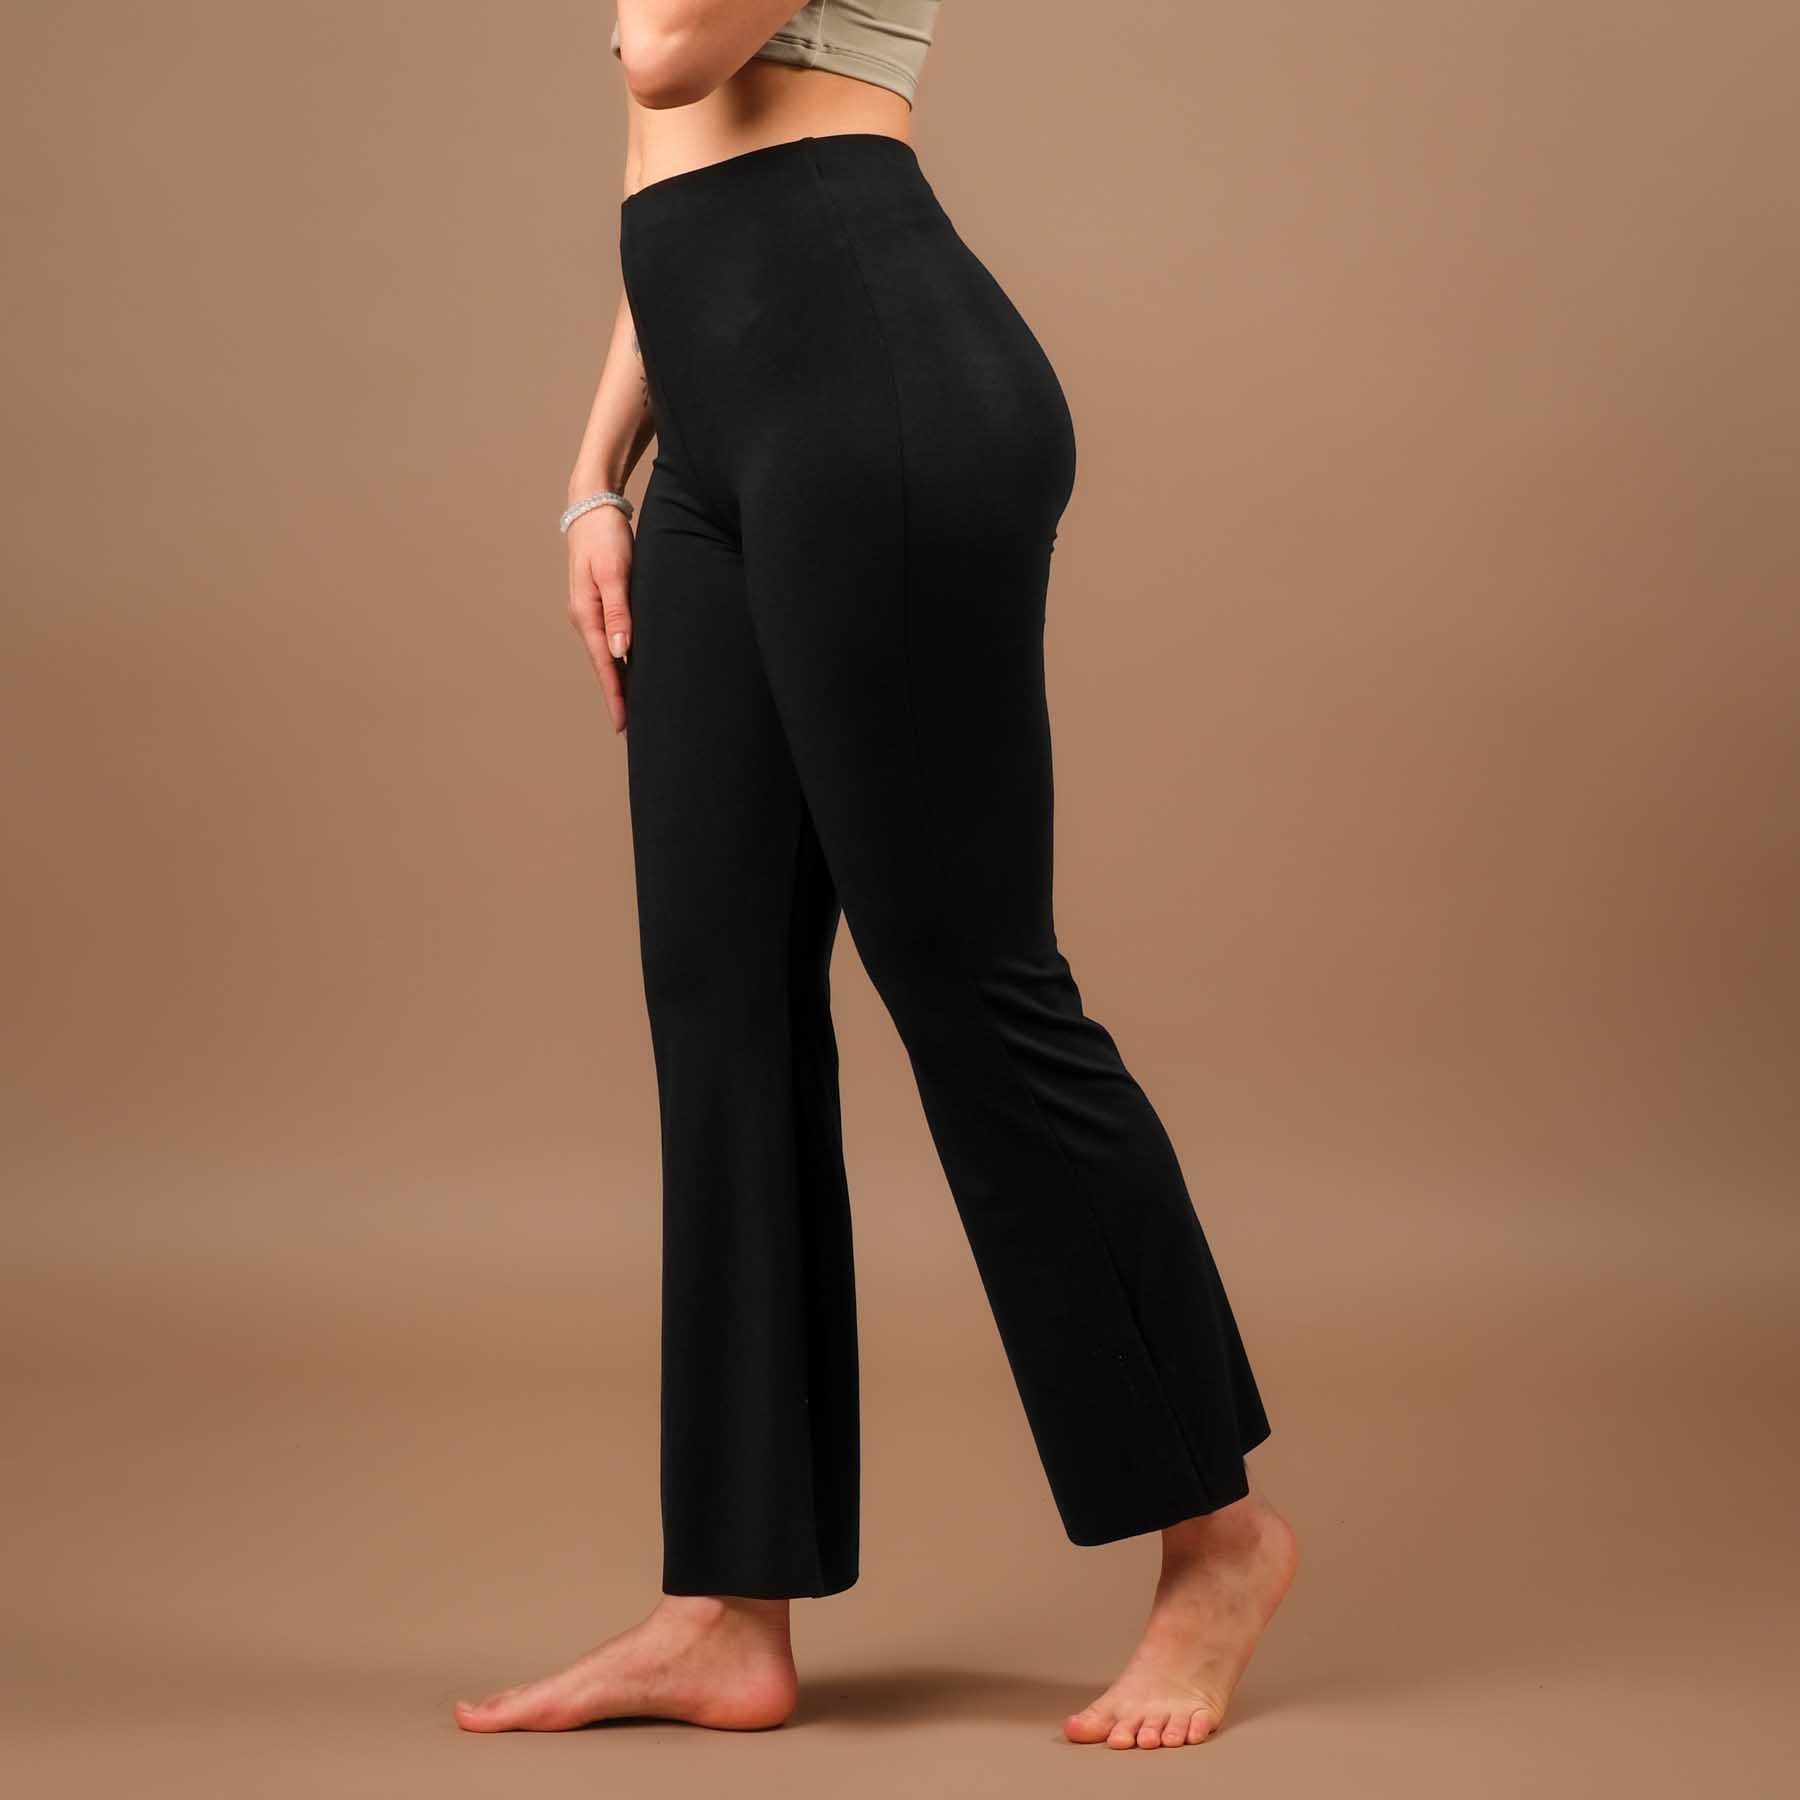 Yoga Leggings Bootcut Comfy produit durablement en Suisse noir